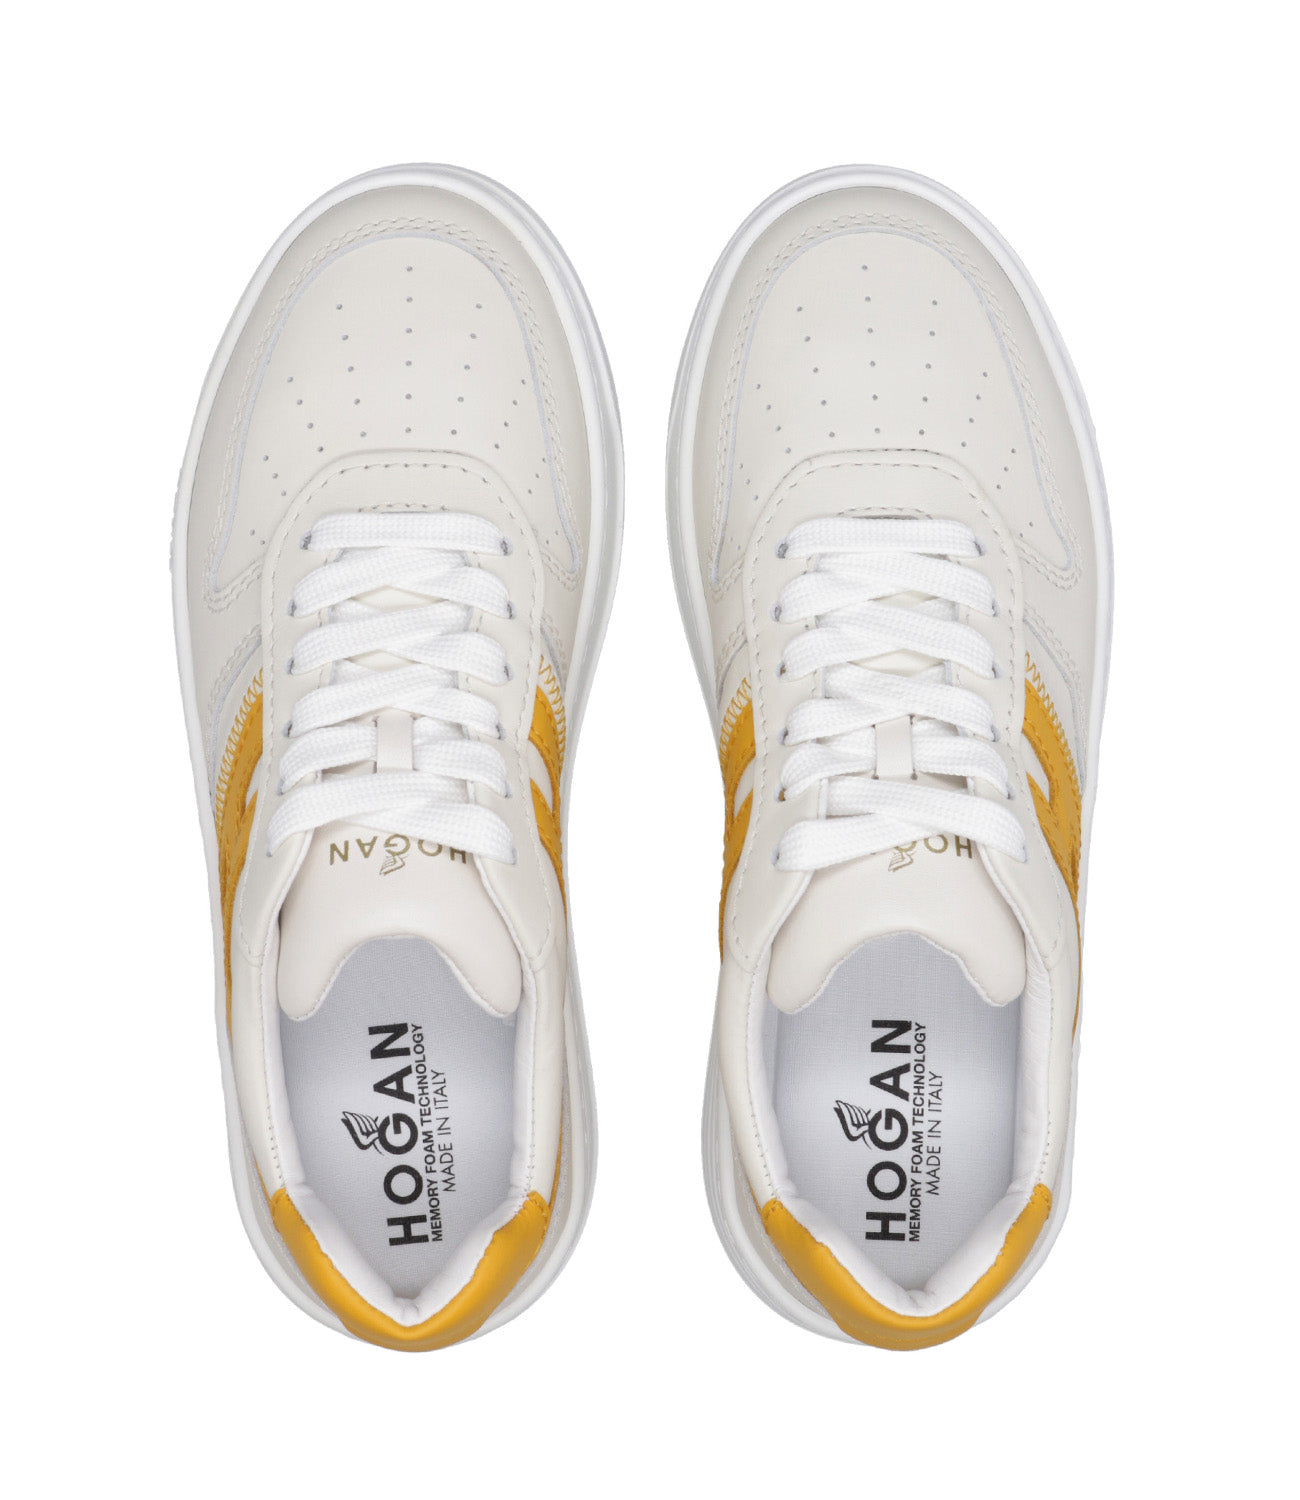 Hogan | Sneakers H630 Allacciato Bianco e Giallo